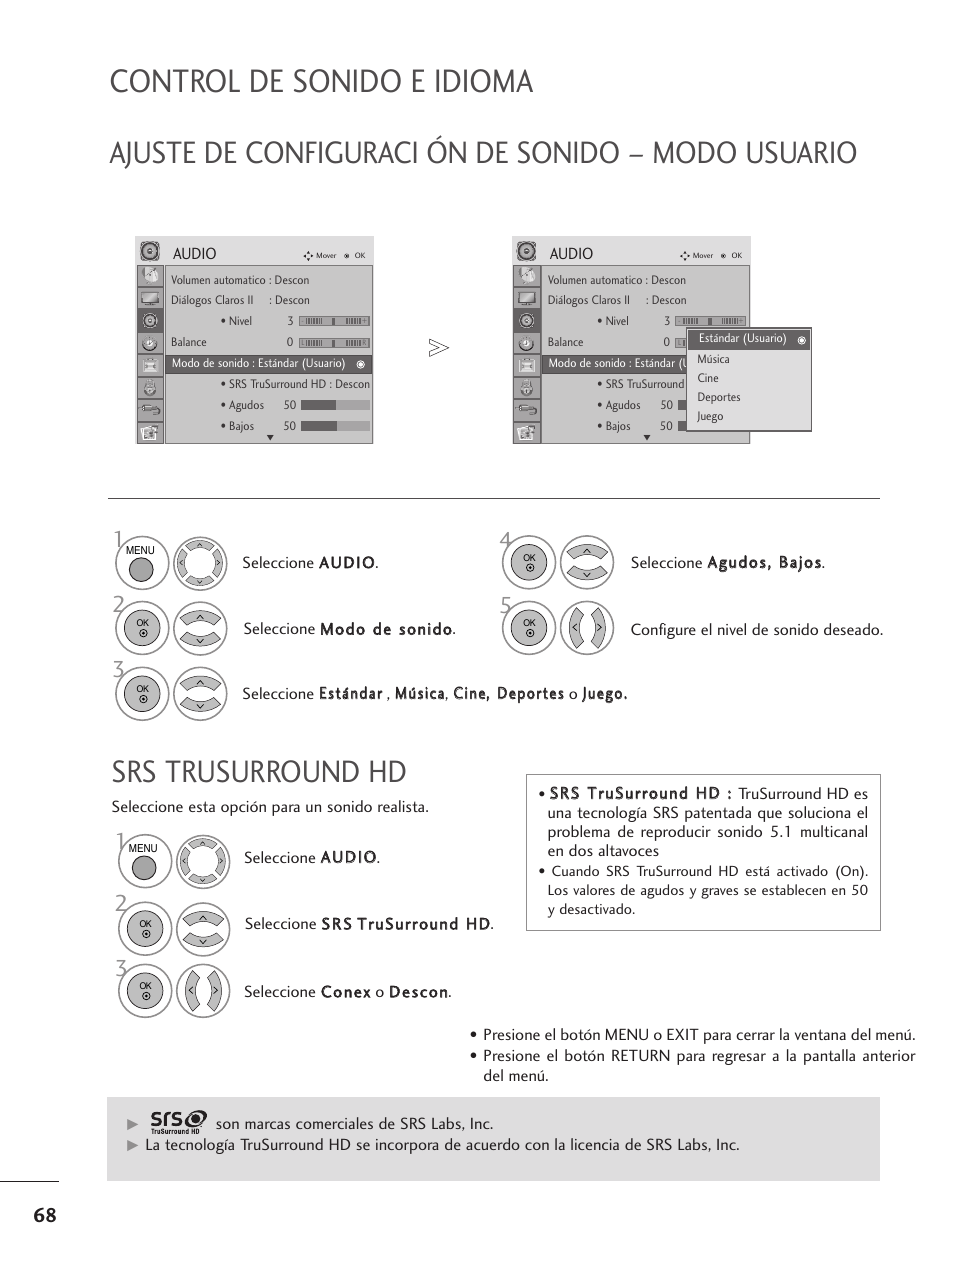 Ajuste de configuraci ón de sonido – modo usuario, Srs trusurround hd, Control de sonido e idioma | LG M1962D-PZ Manual del usuario | Página 70 / 124